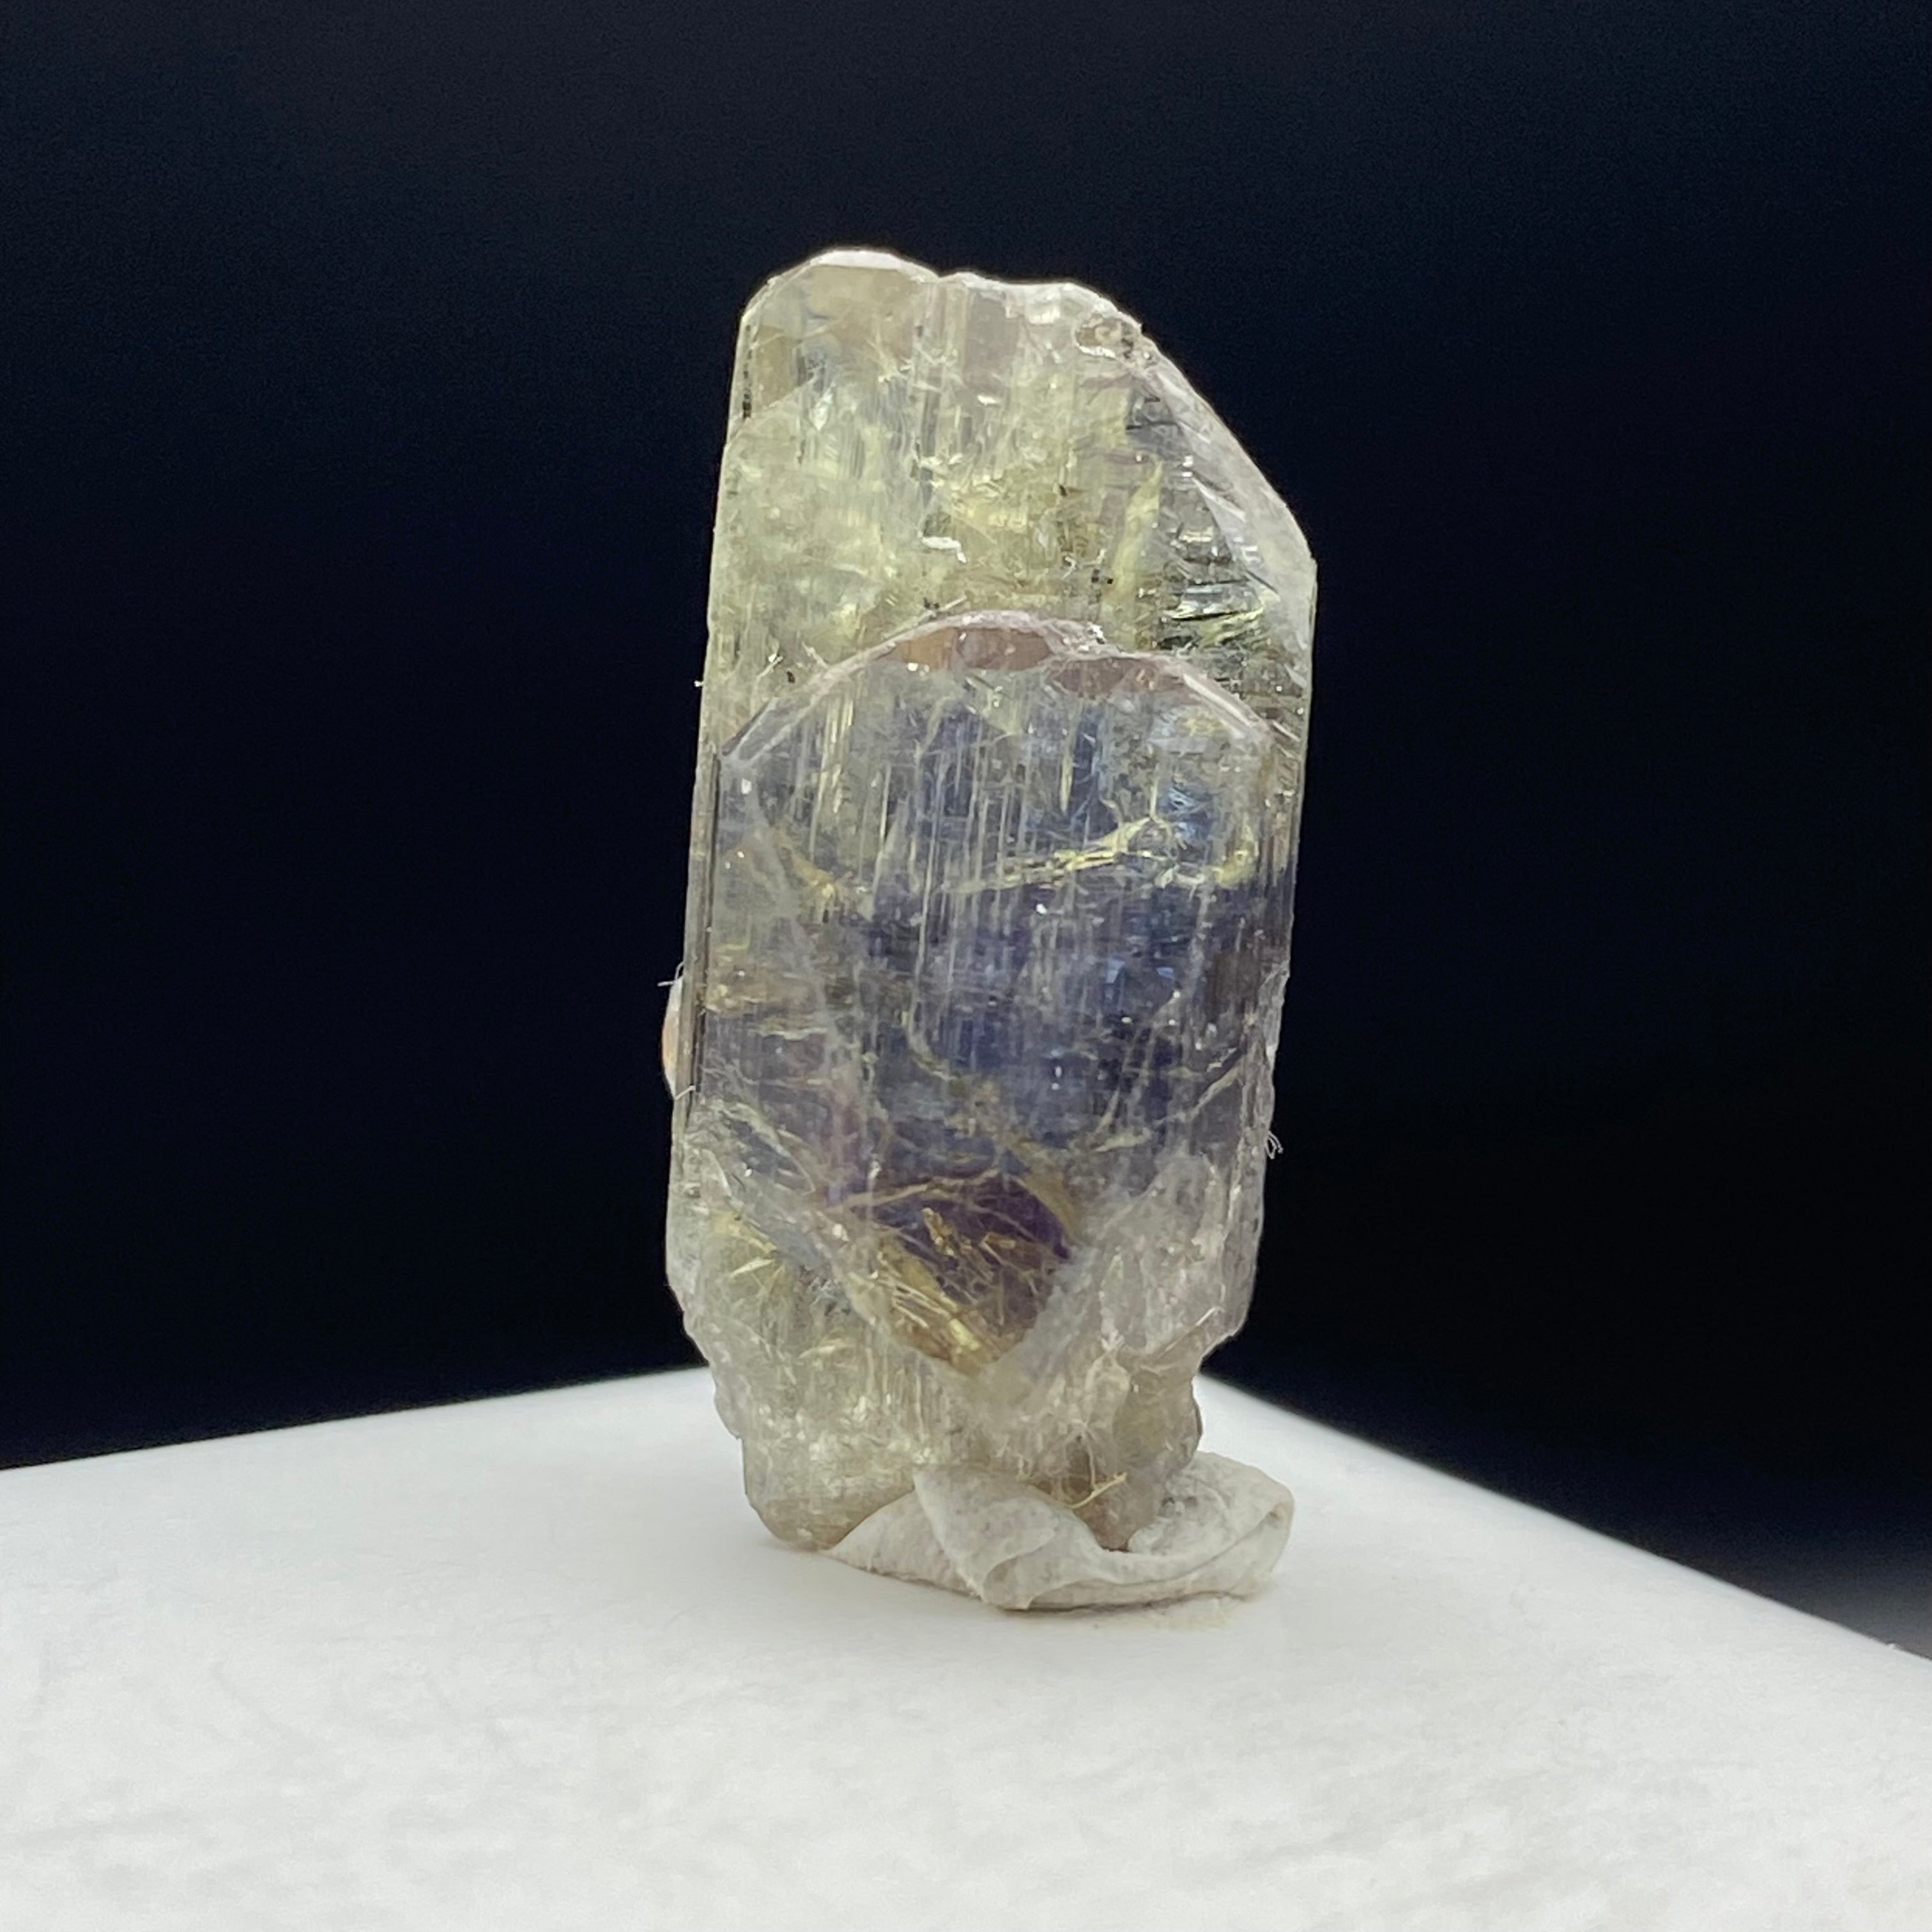 Real Tanzanite Crystal - 004